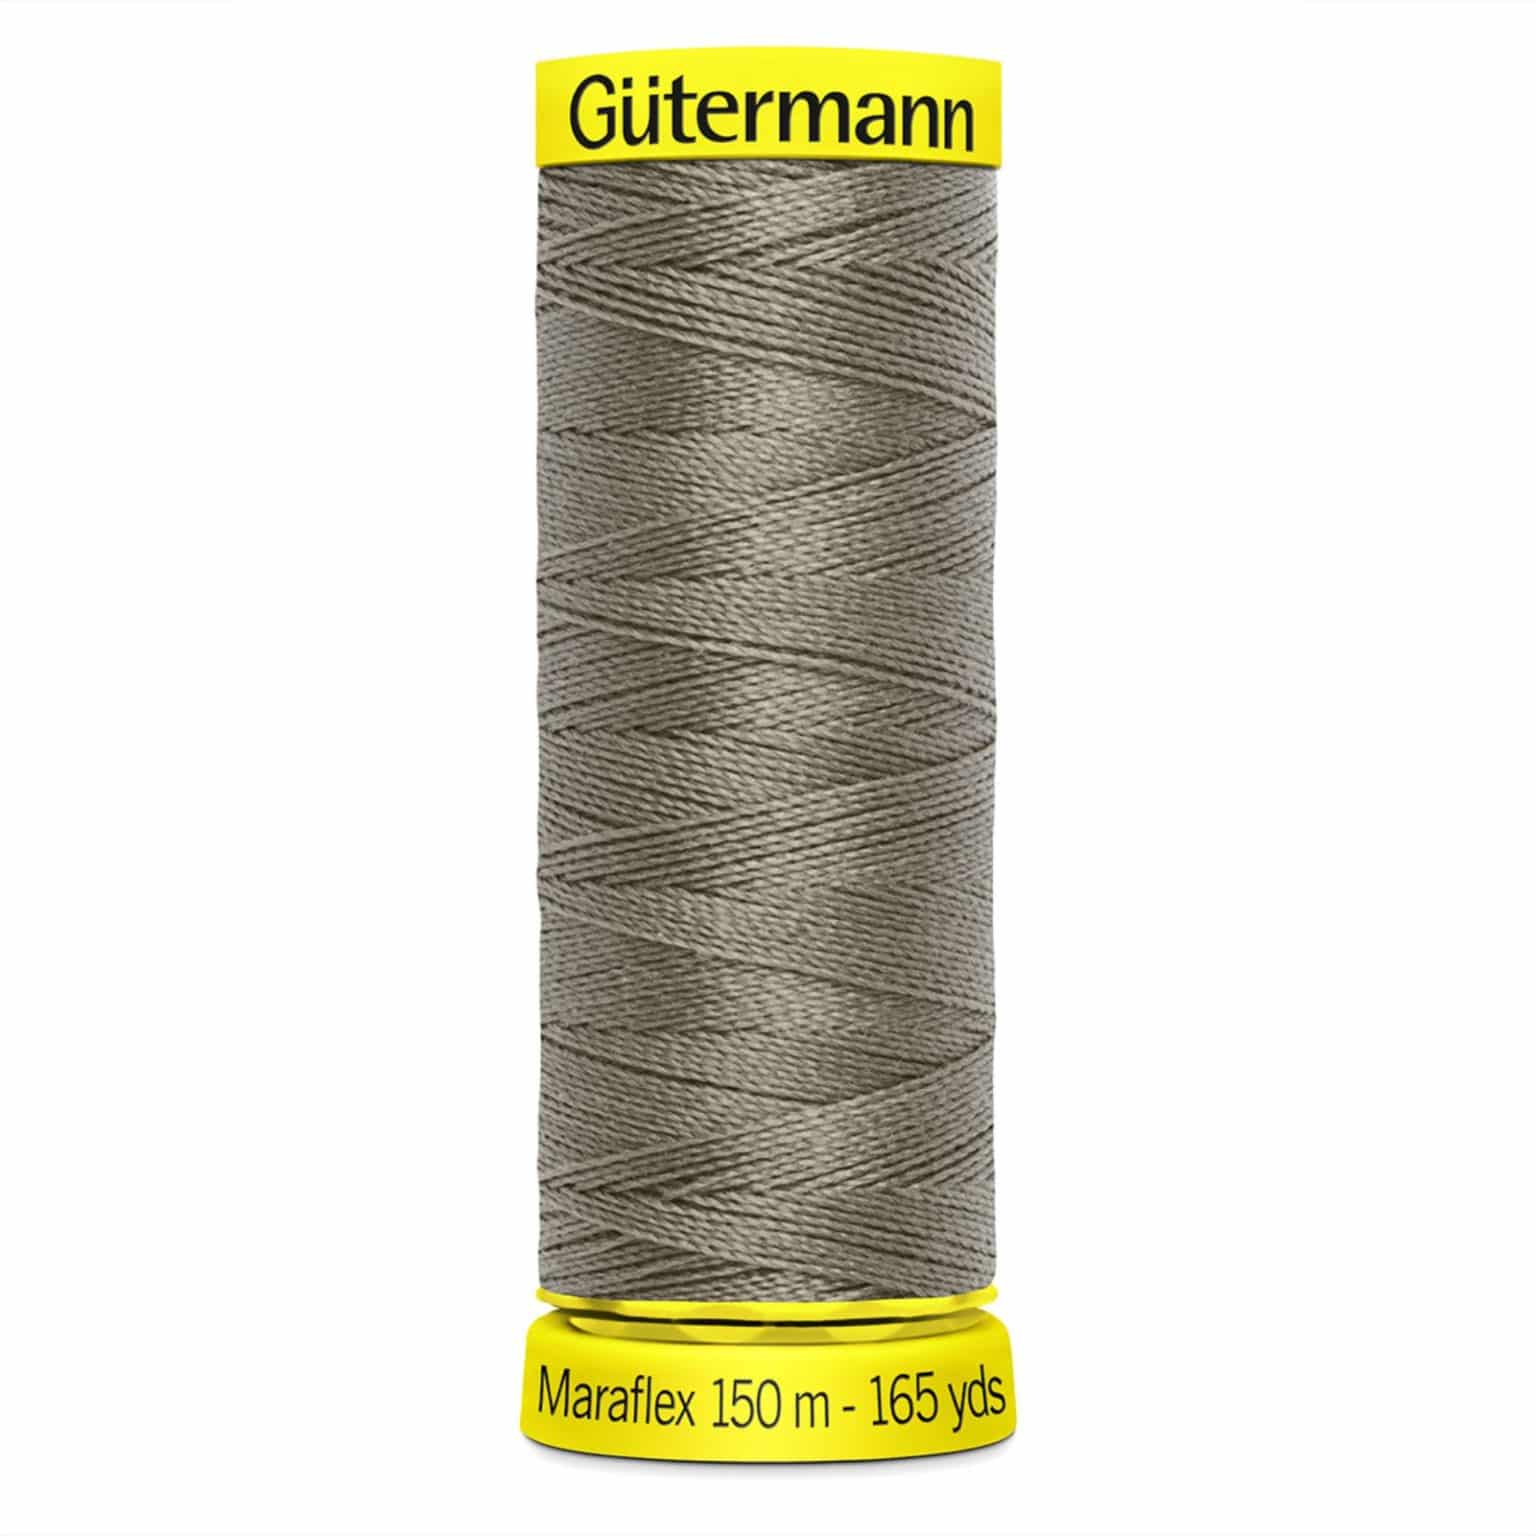 Gutermann Maraflex Thread | More Sewing